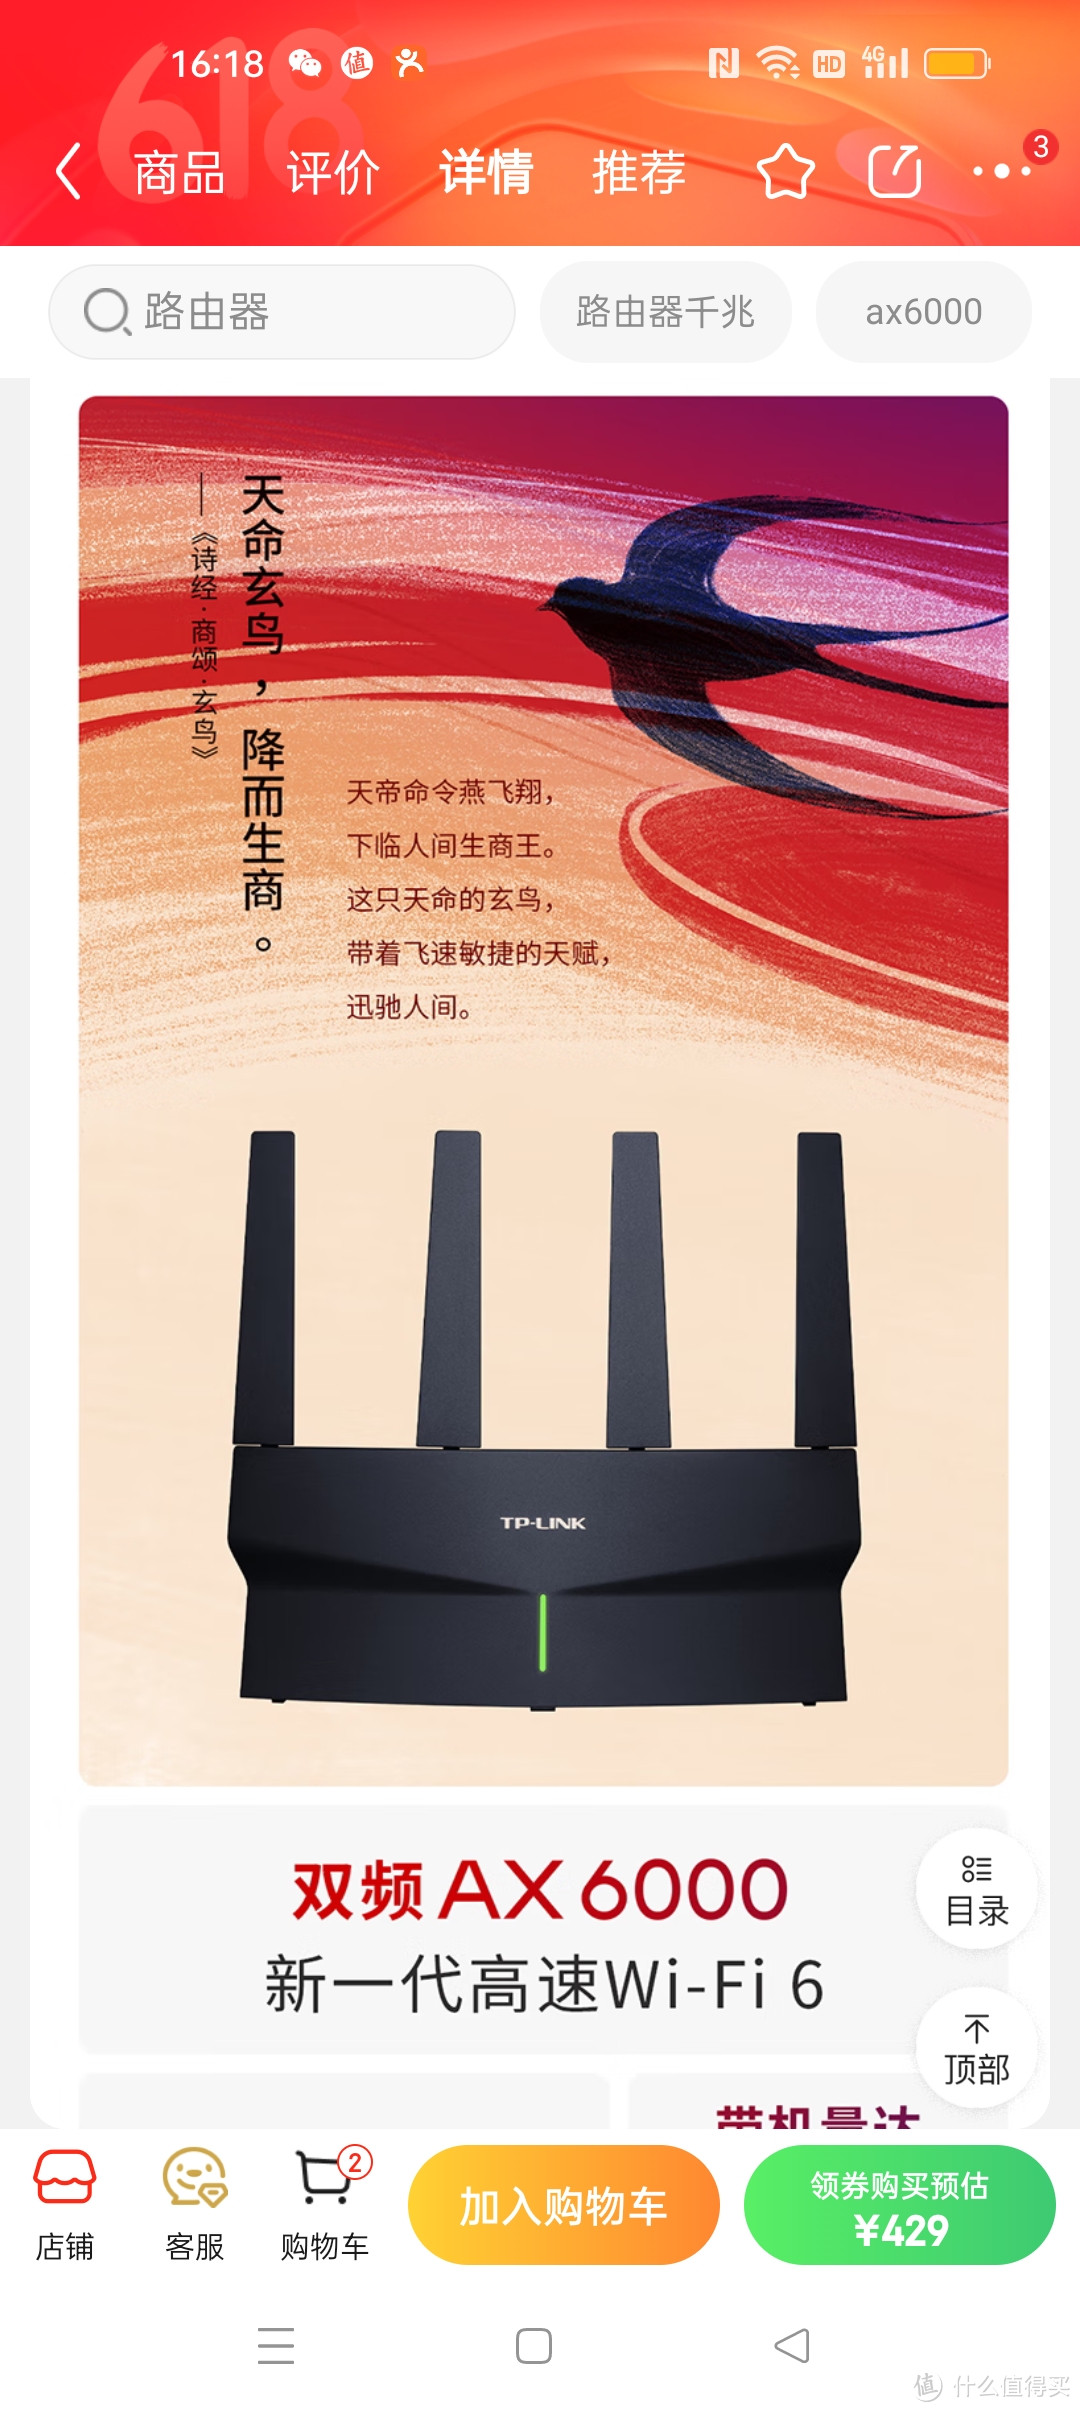 为了改善家里的网络，买回来TP-LINK AX6000千兆无线路由器 ！